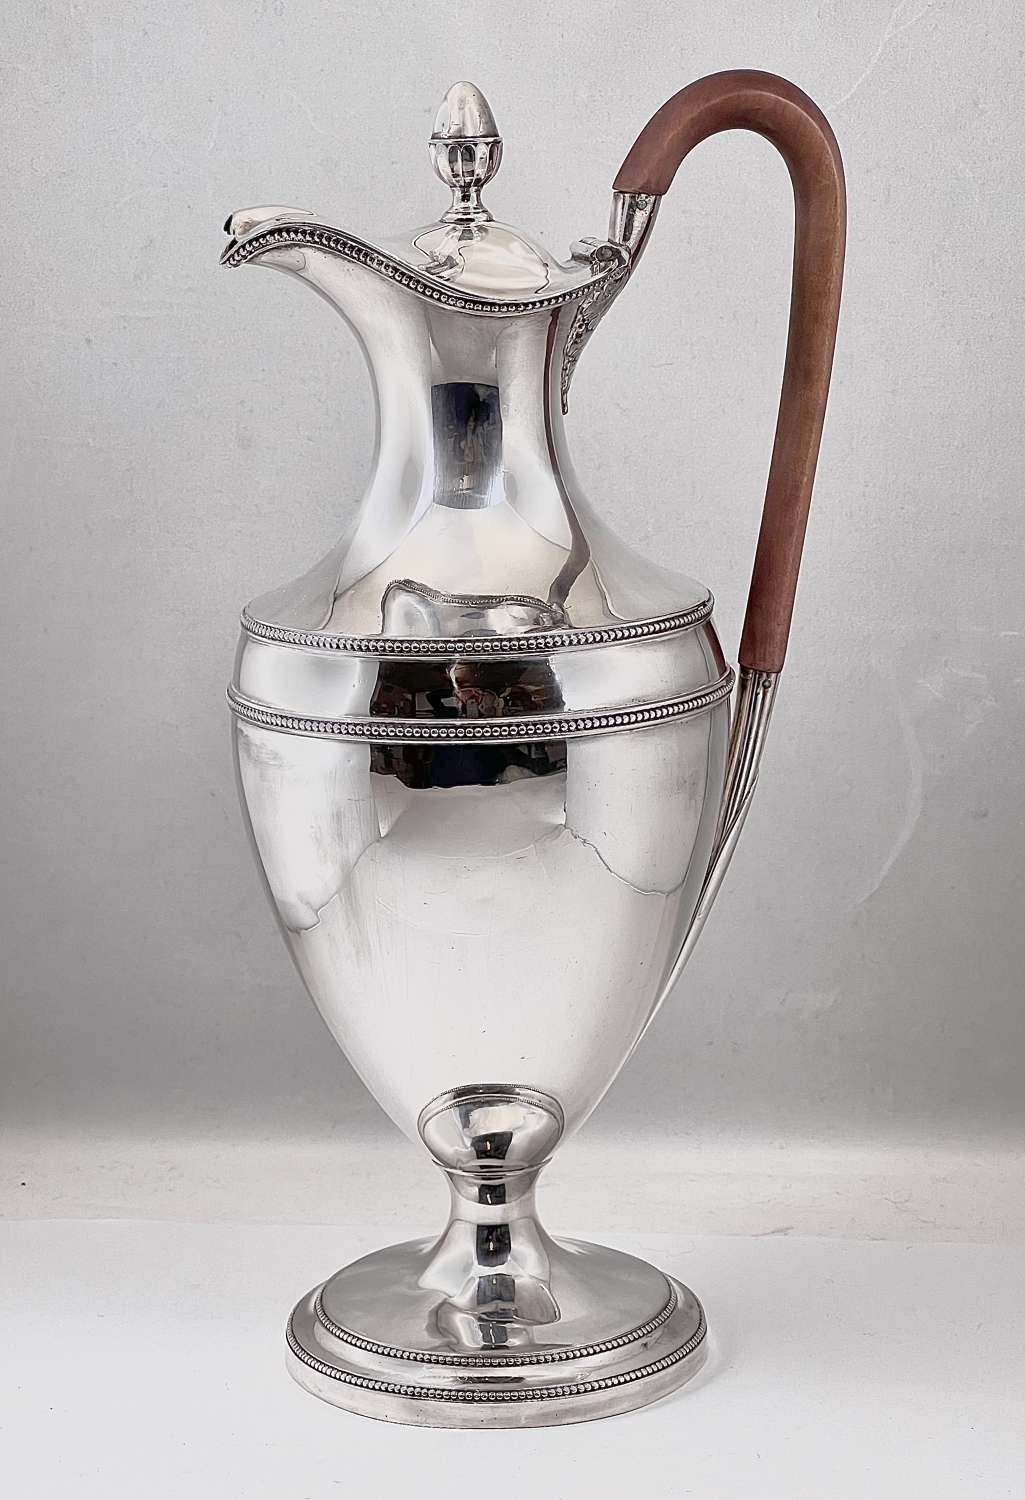 George III antique silver ewer, John Scofield, London 1782